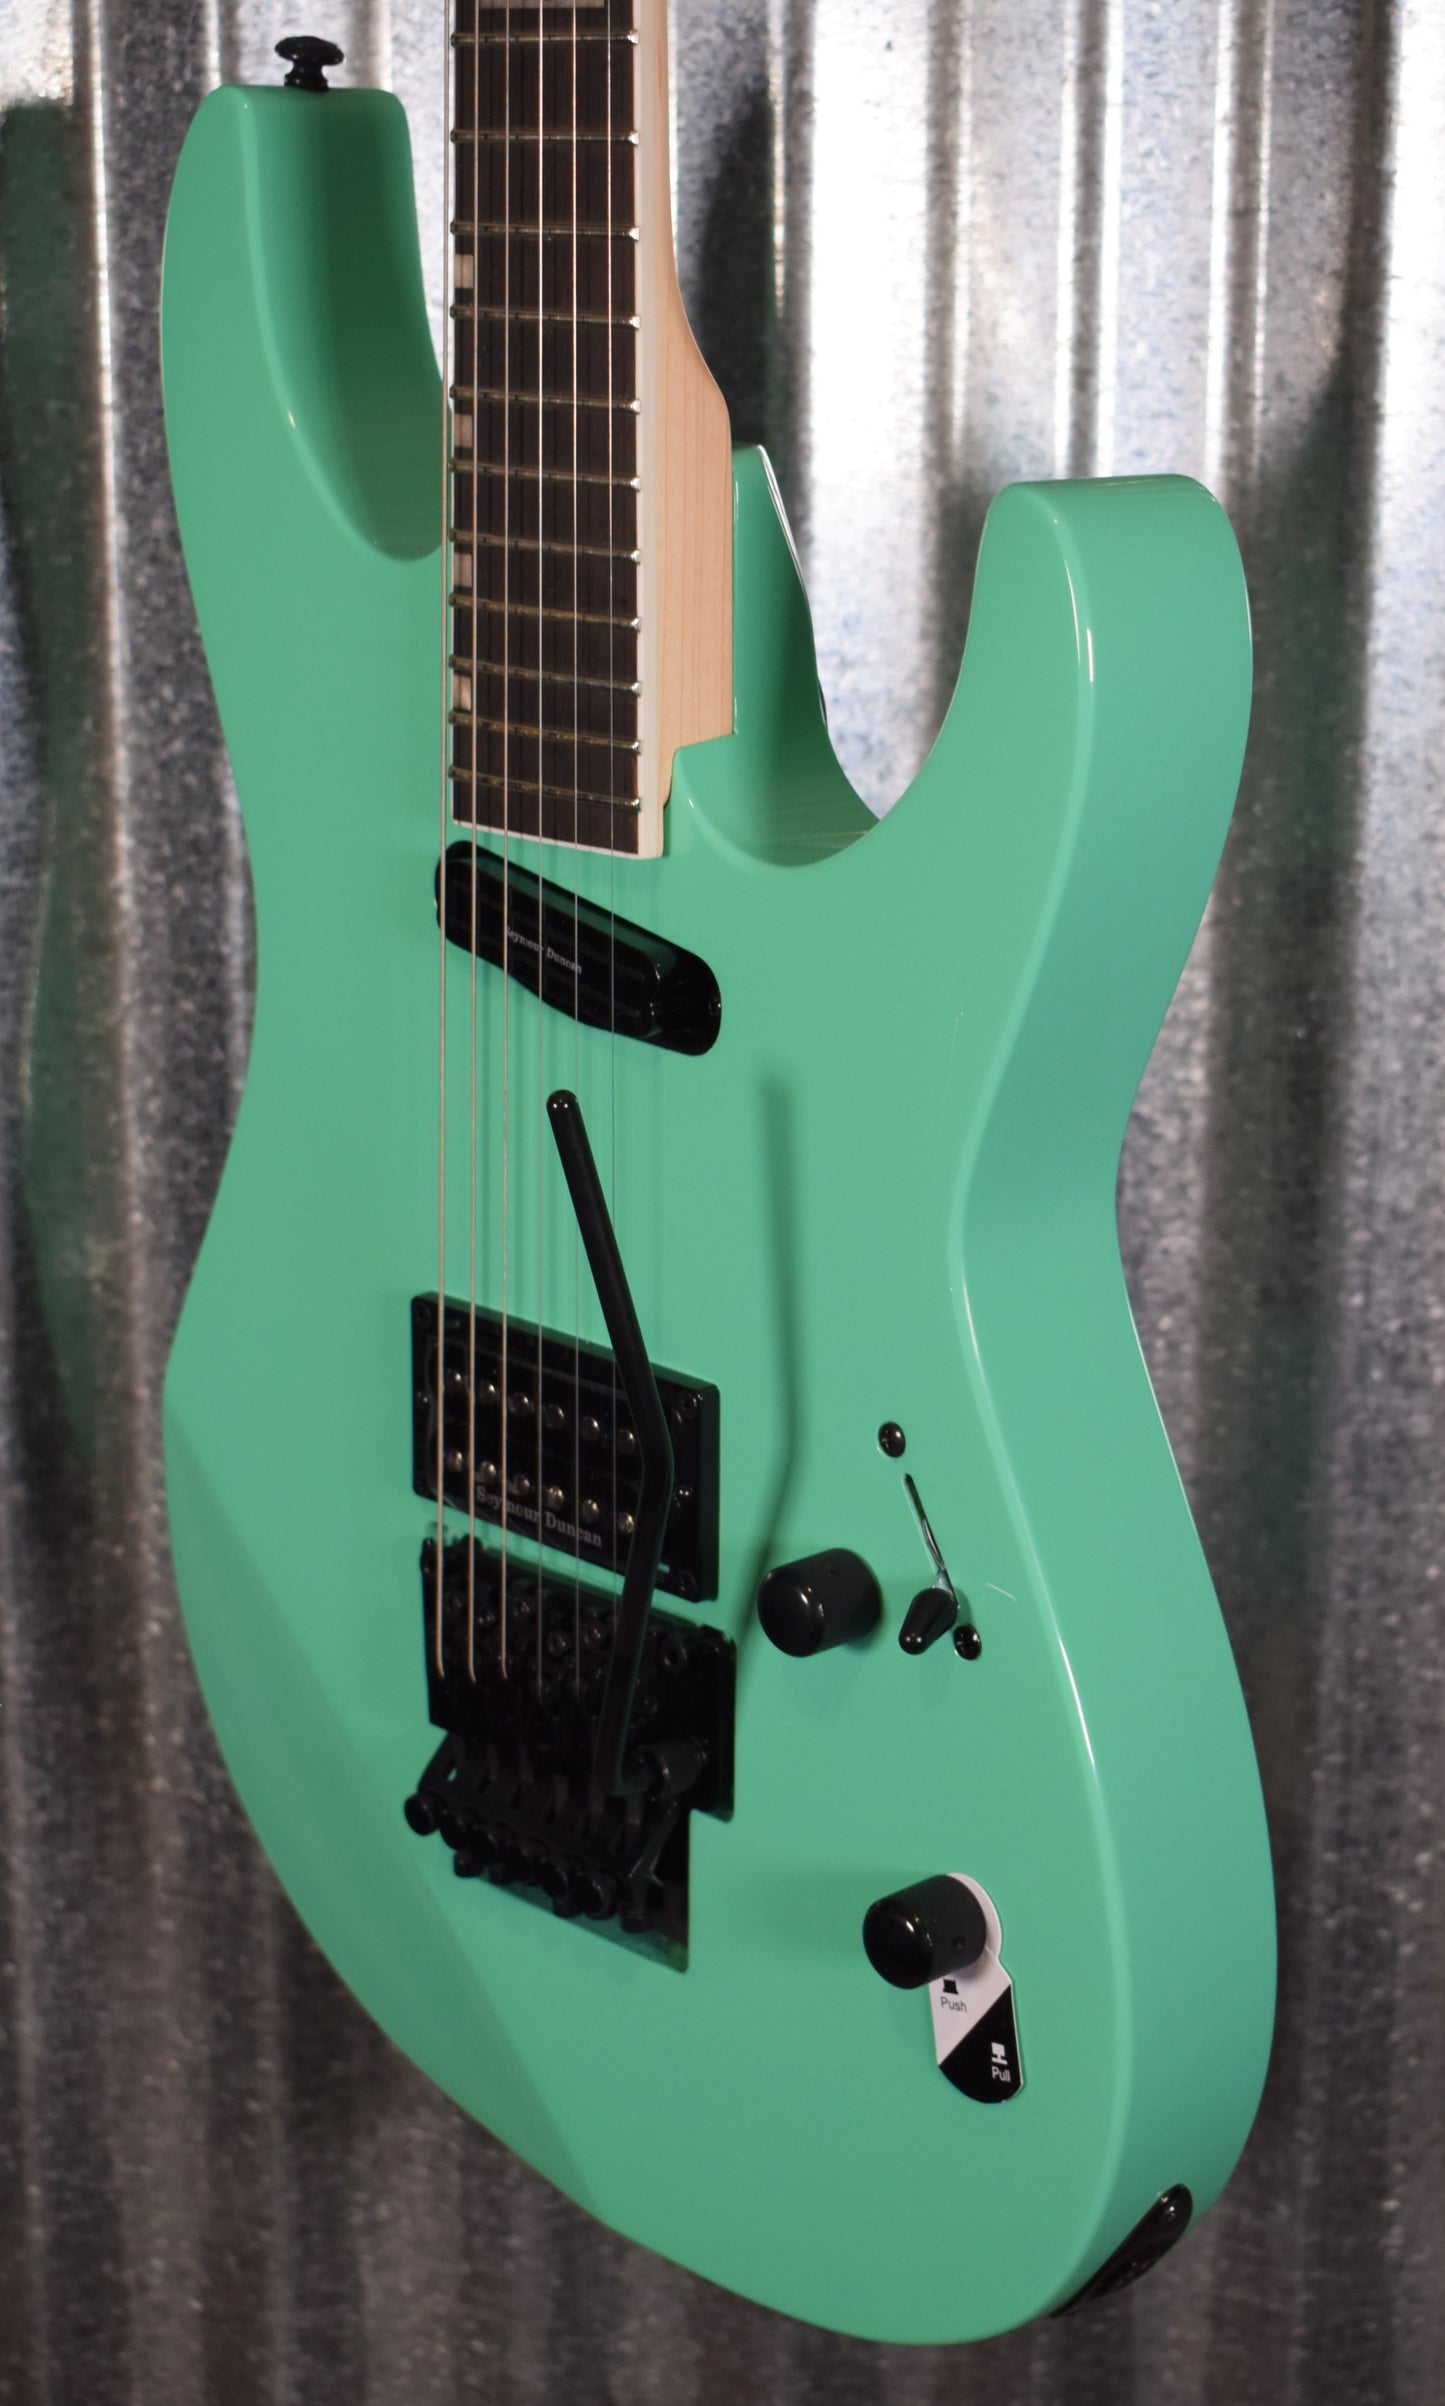 ESP LTD Mirage Deluxe '87 Turquoise Guitar & Case LMIRAGEDX87TURQ #0156